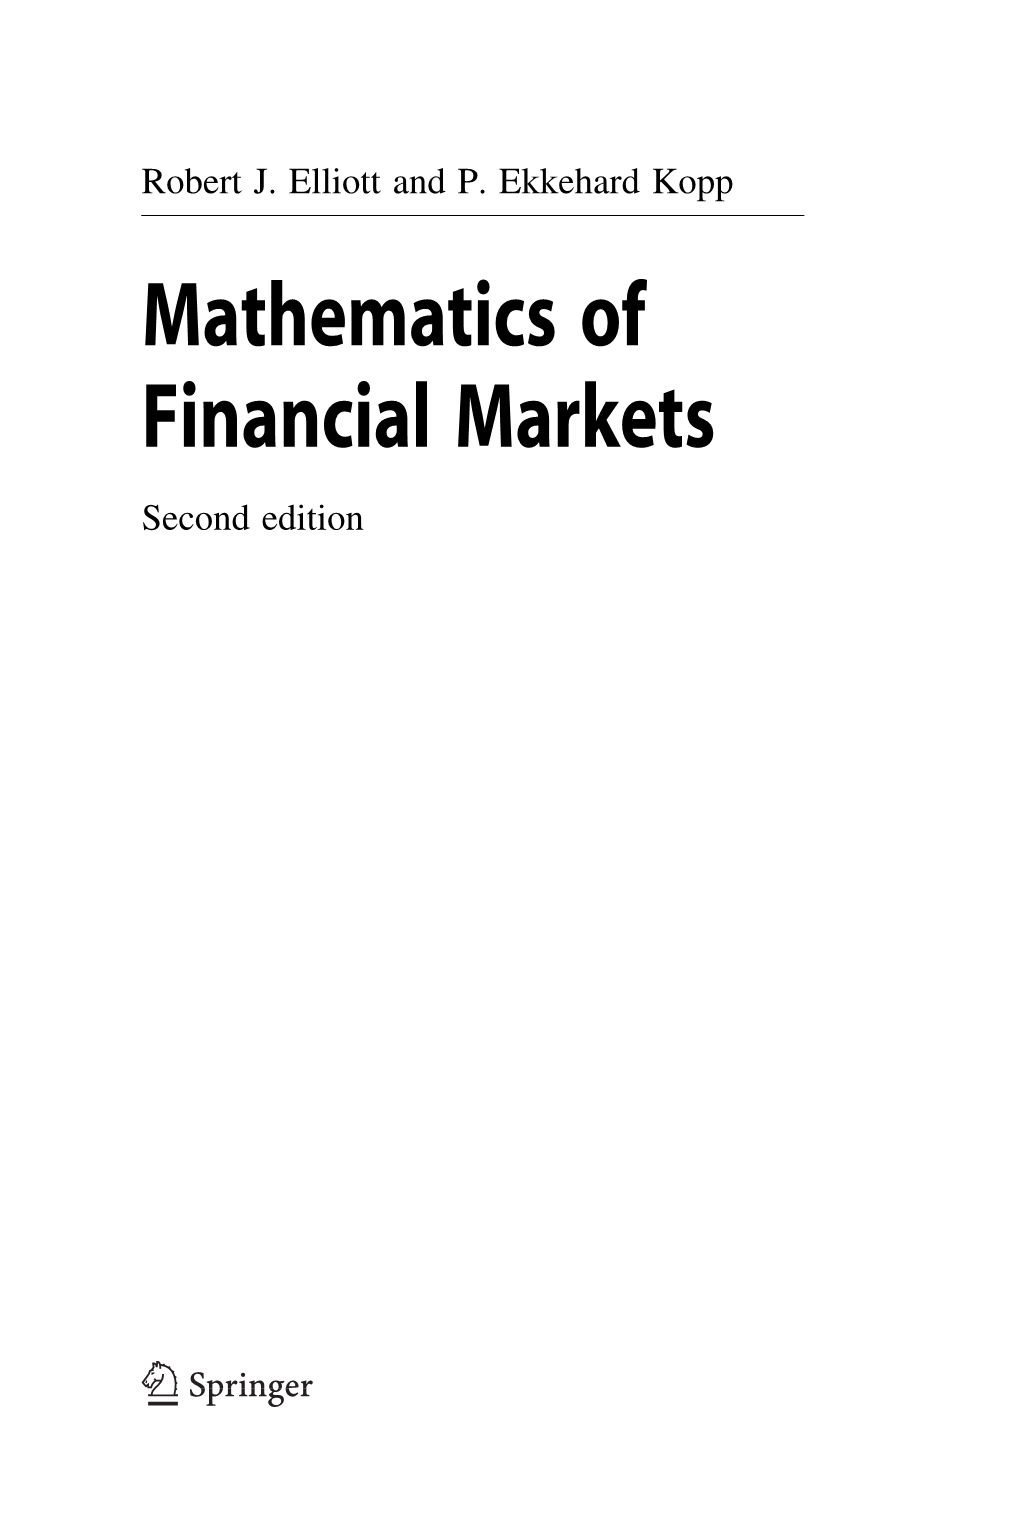 Mathematics of Financial Markets Second Edition Robert J